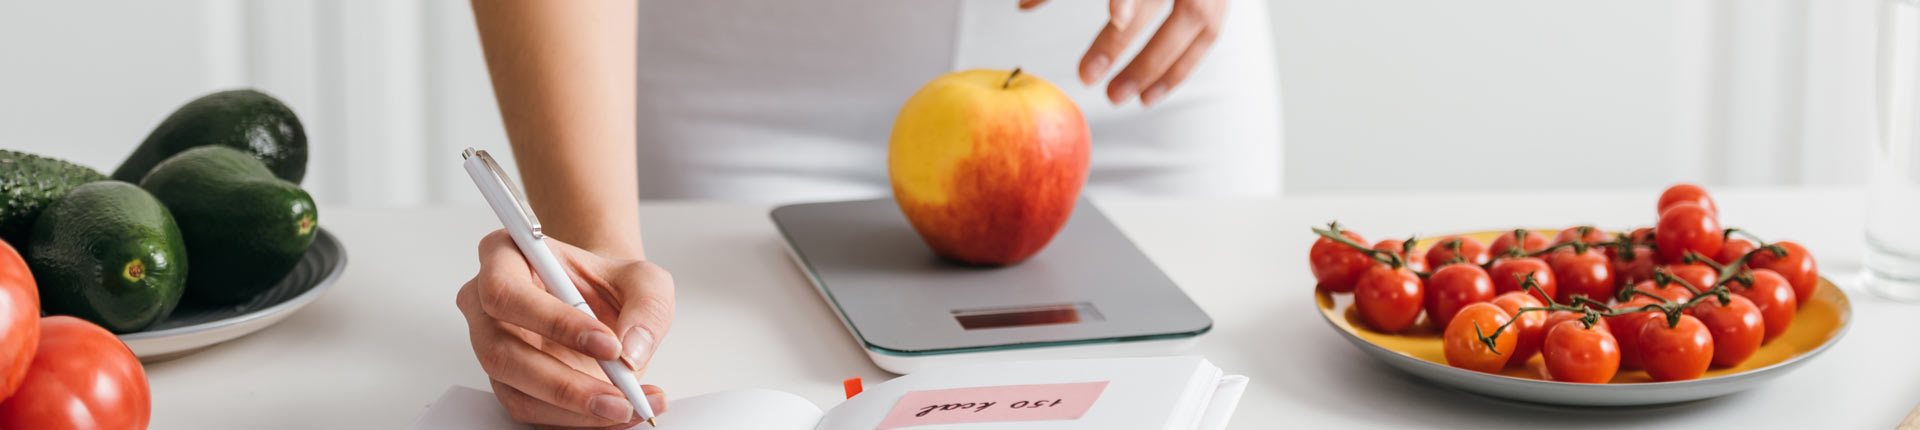 W jaki sposób prowadzenie dziennika kalorii pomaga schudnąć?